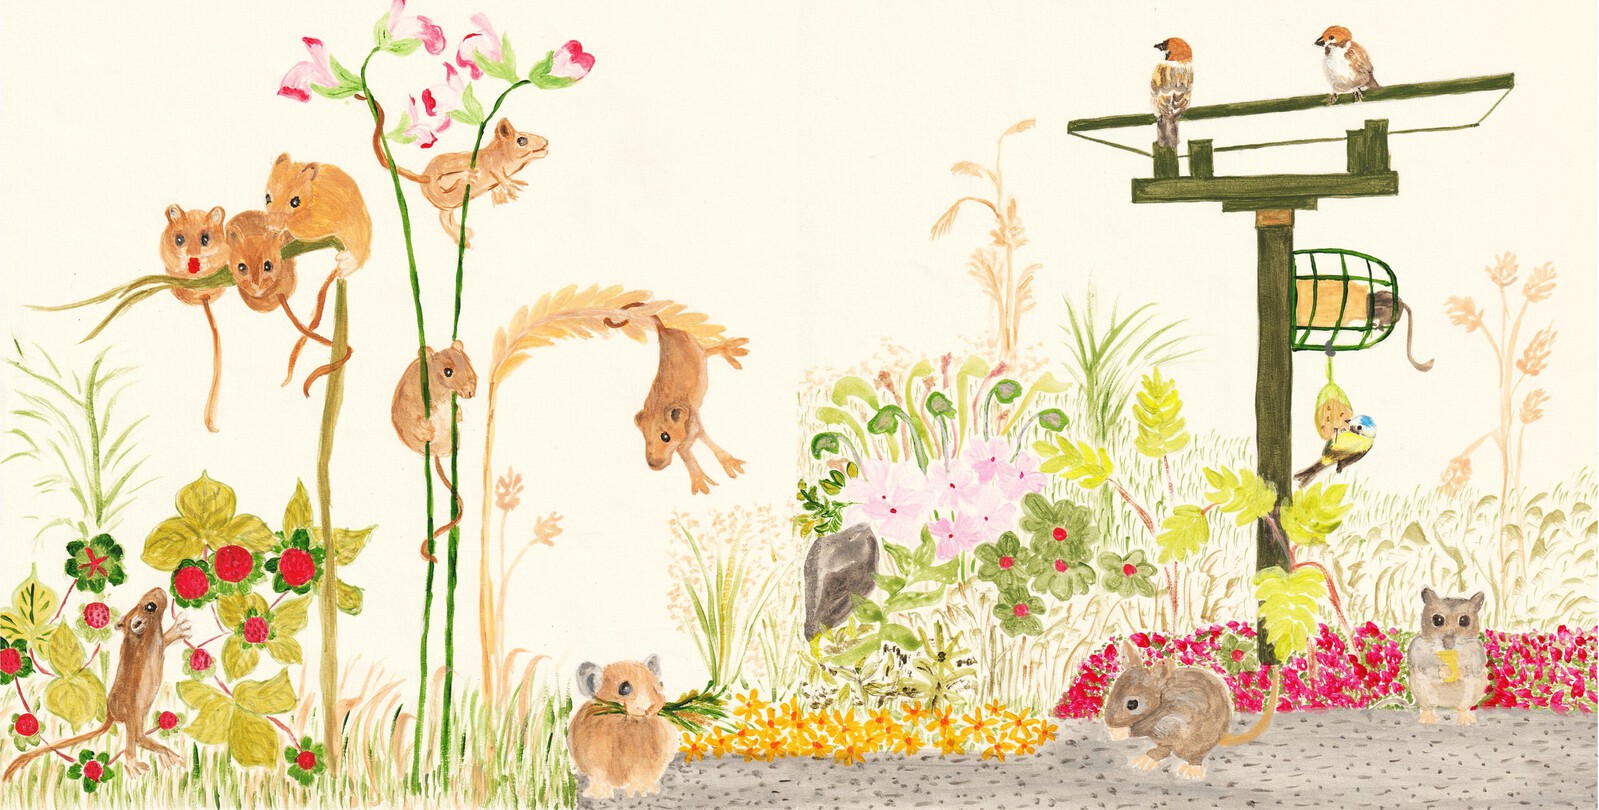 Muizen in de tuin